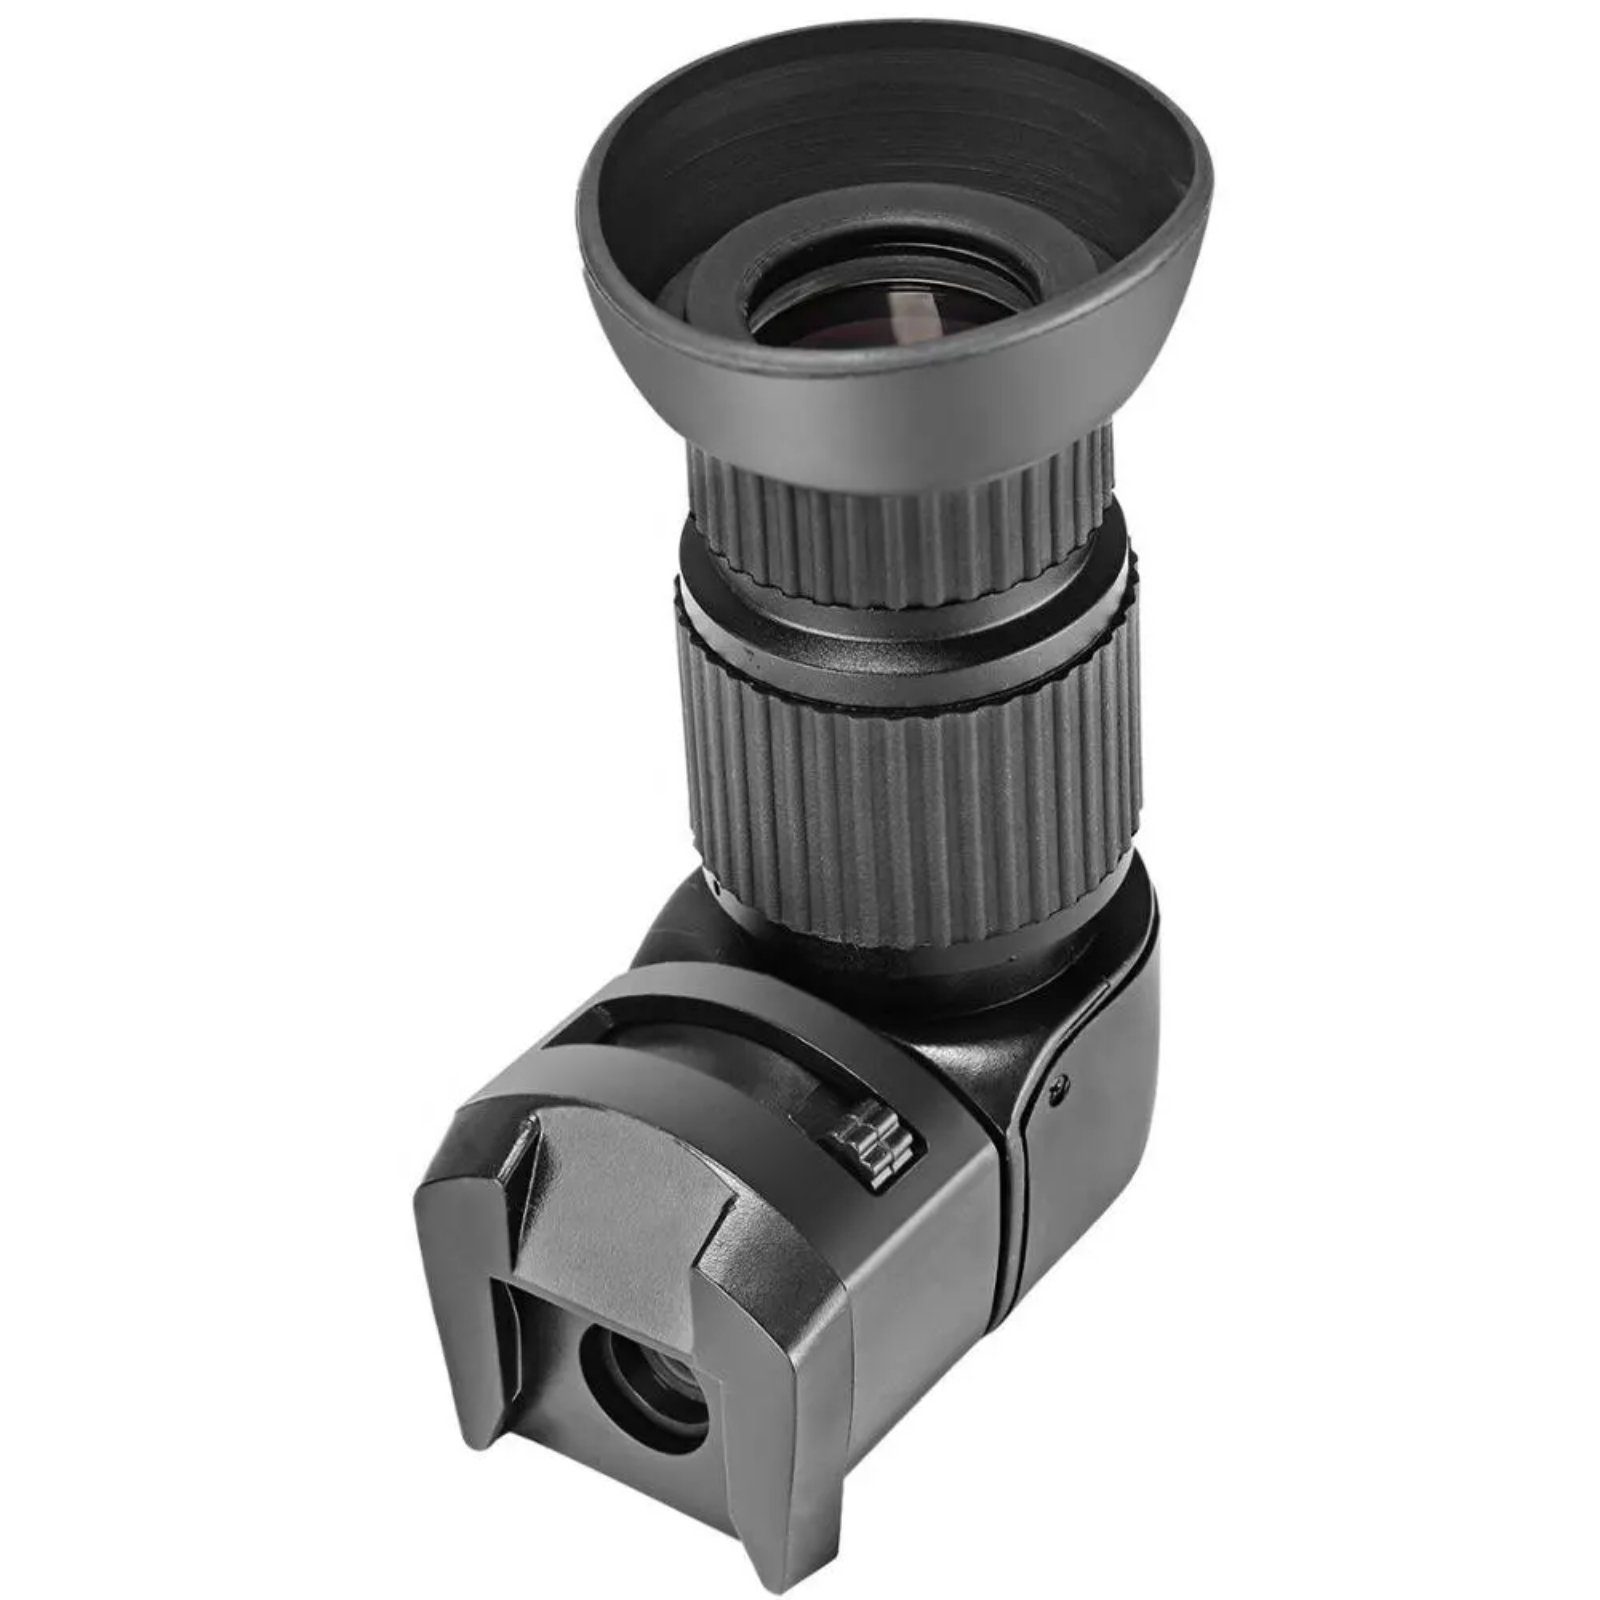 Winkelsucher 2,0-fach - DSLR für Impulsfoto Kameras 1,0 Aufstecksucher Viewfinder